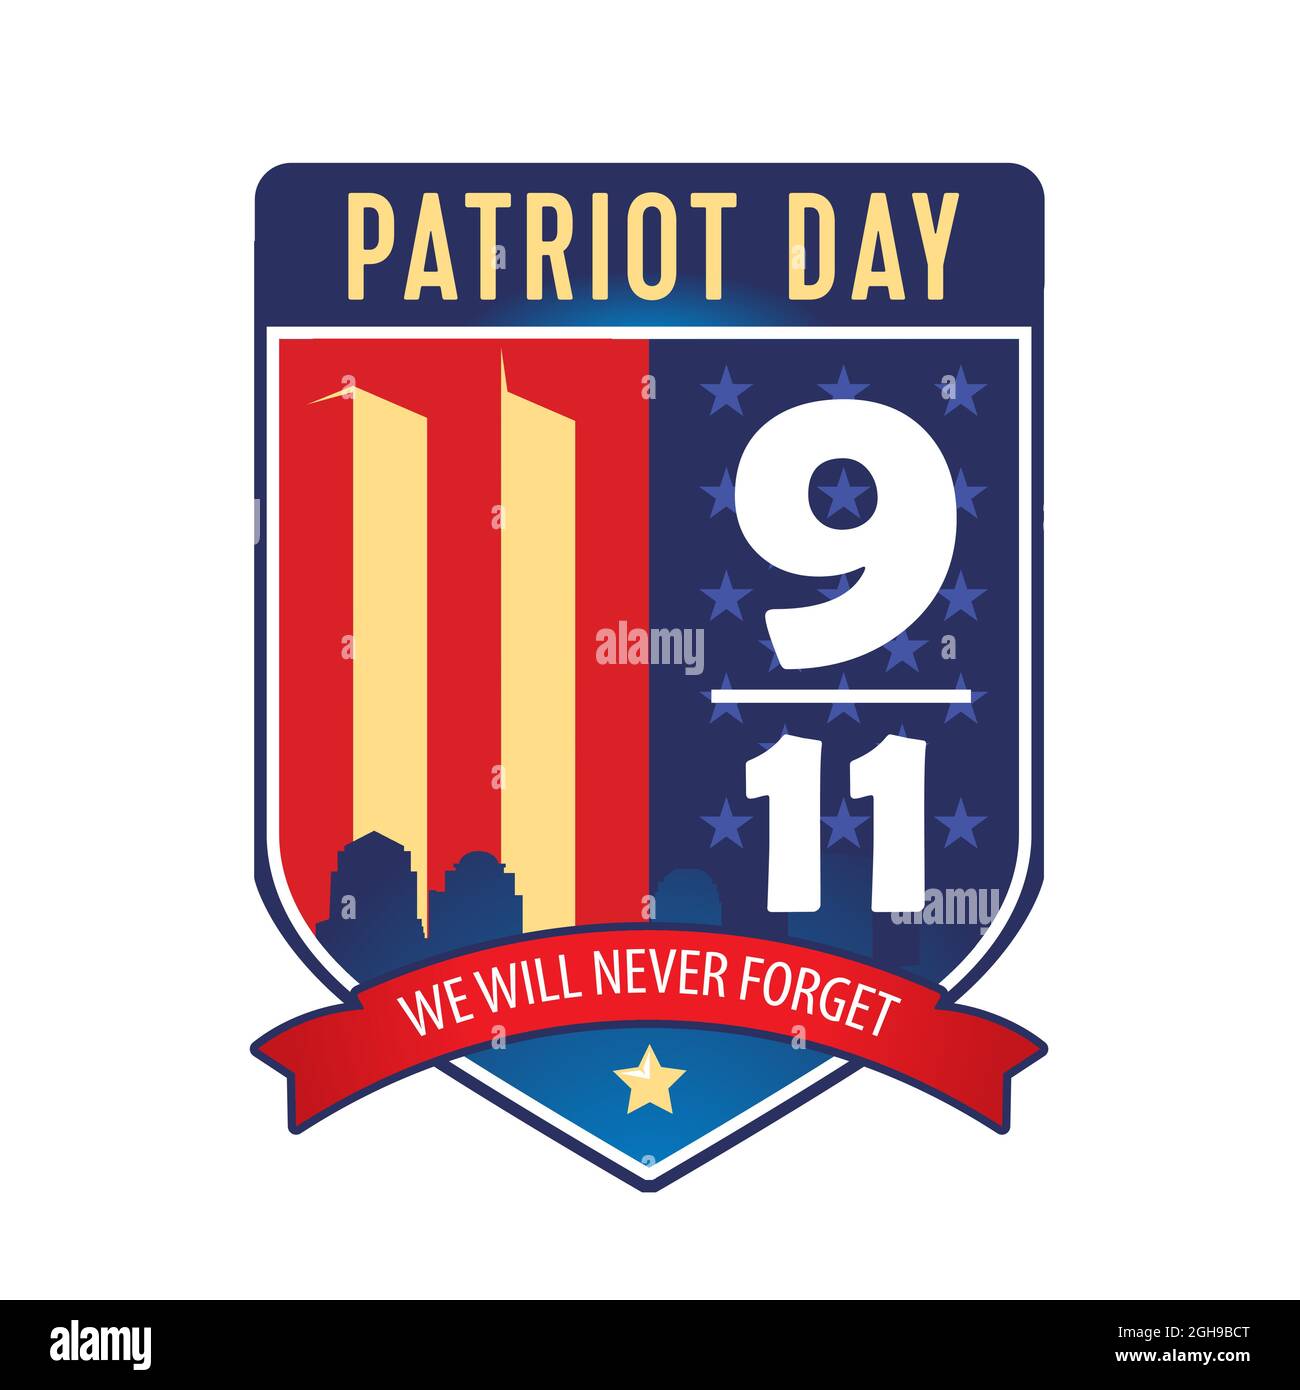 9-11 Patriot Day. Wir Werden Es Nie Vergessen. Patriot Day 11. September 2001 in den Schild eingeschrieben Stock Vektor